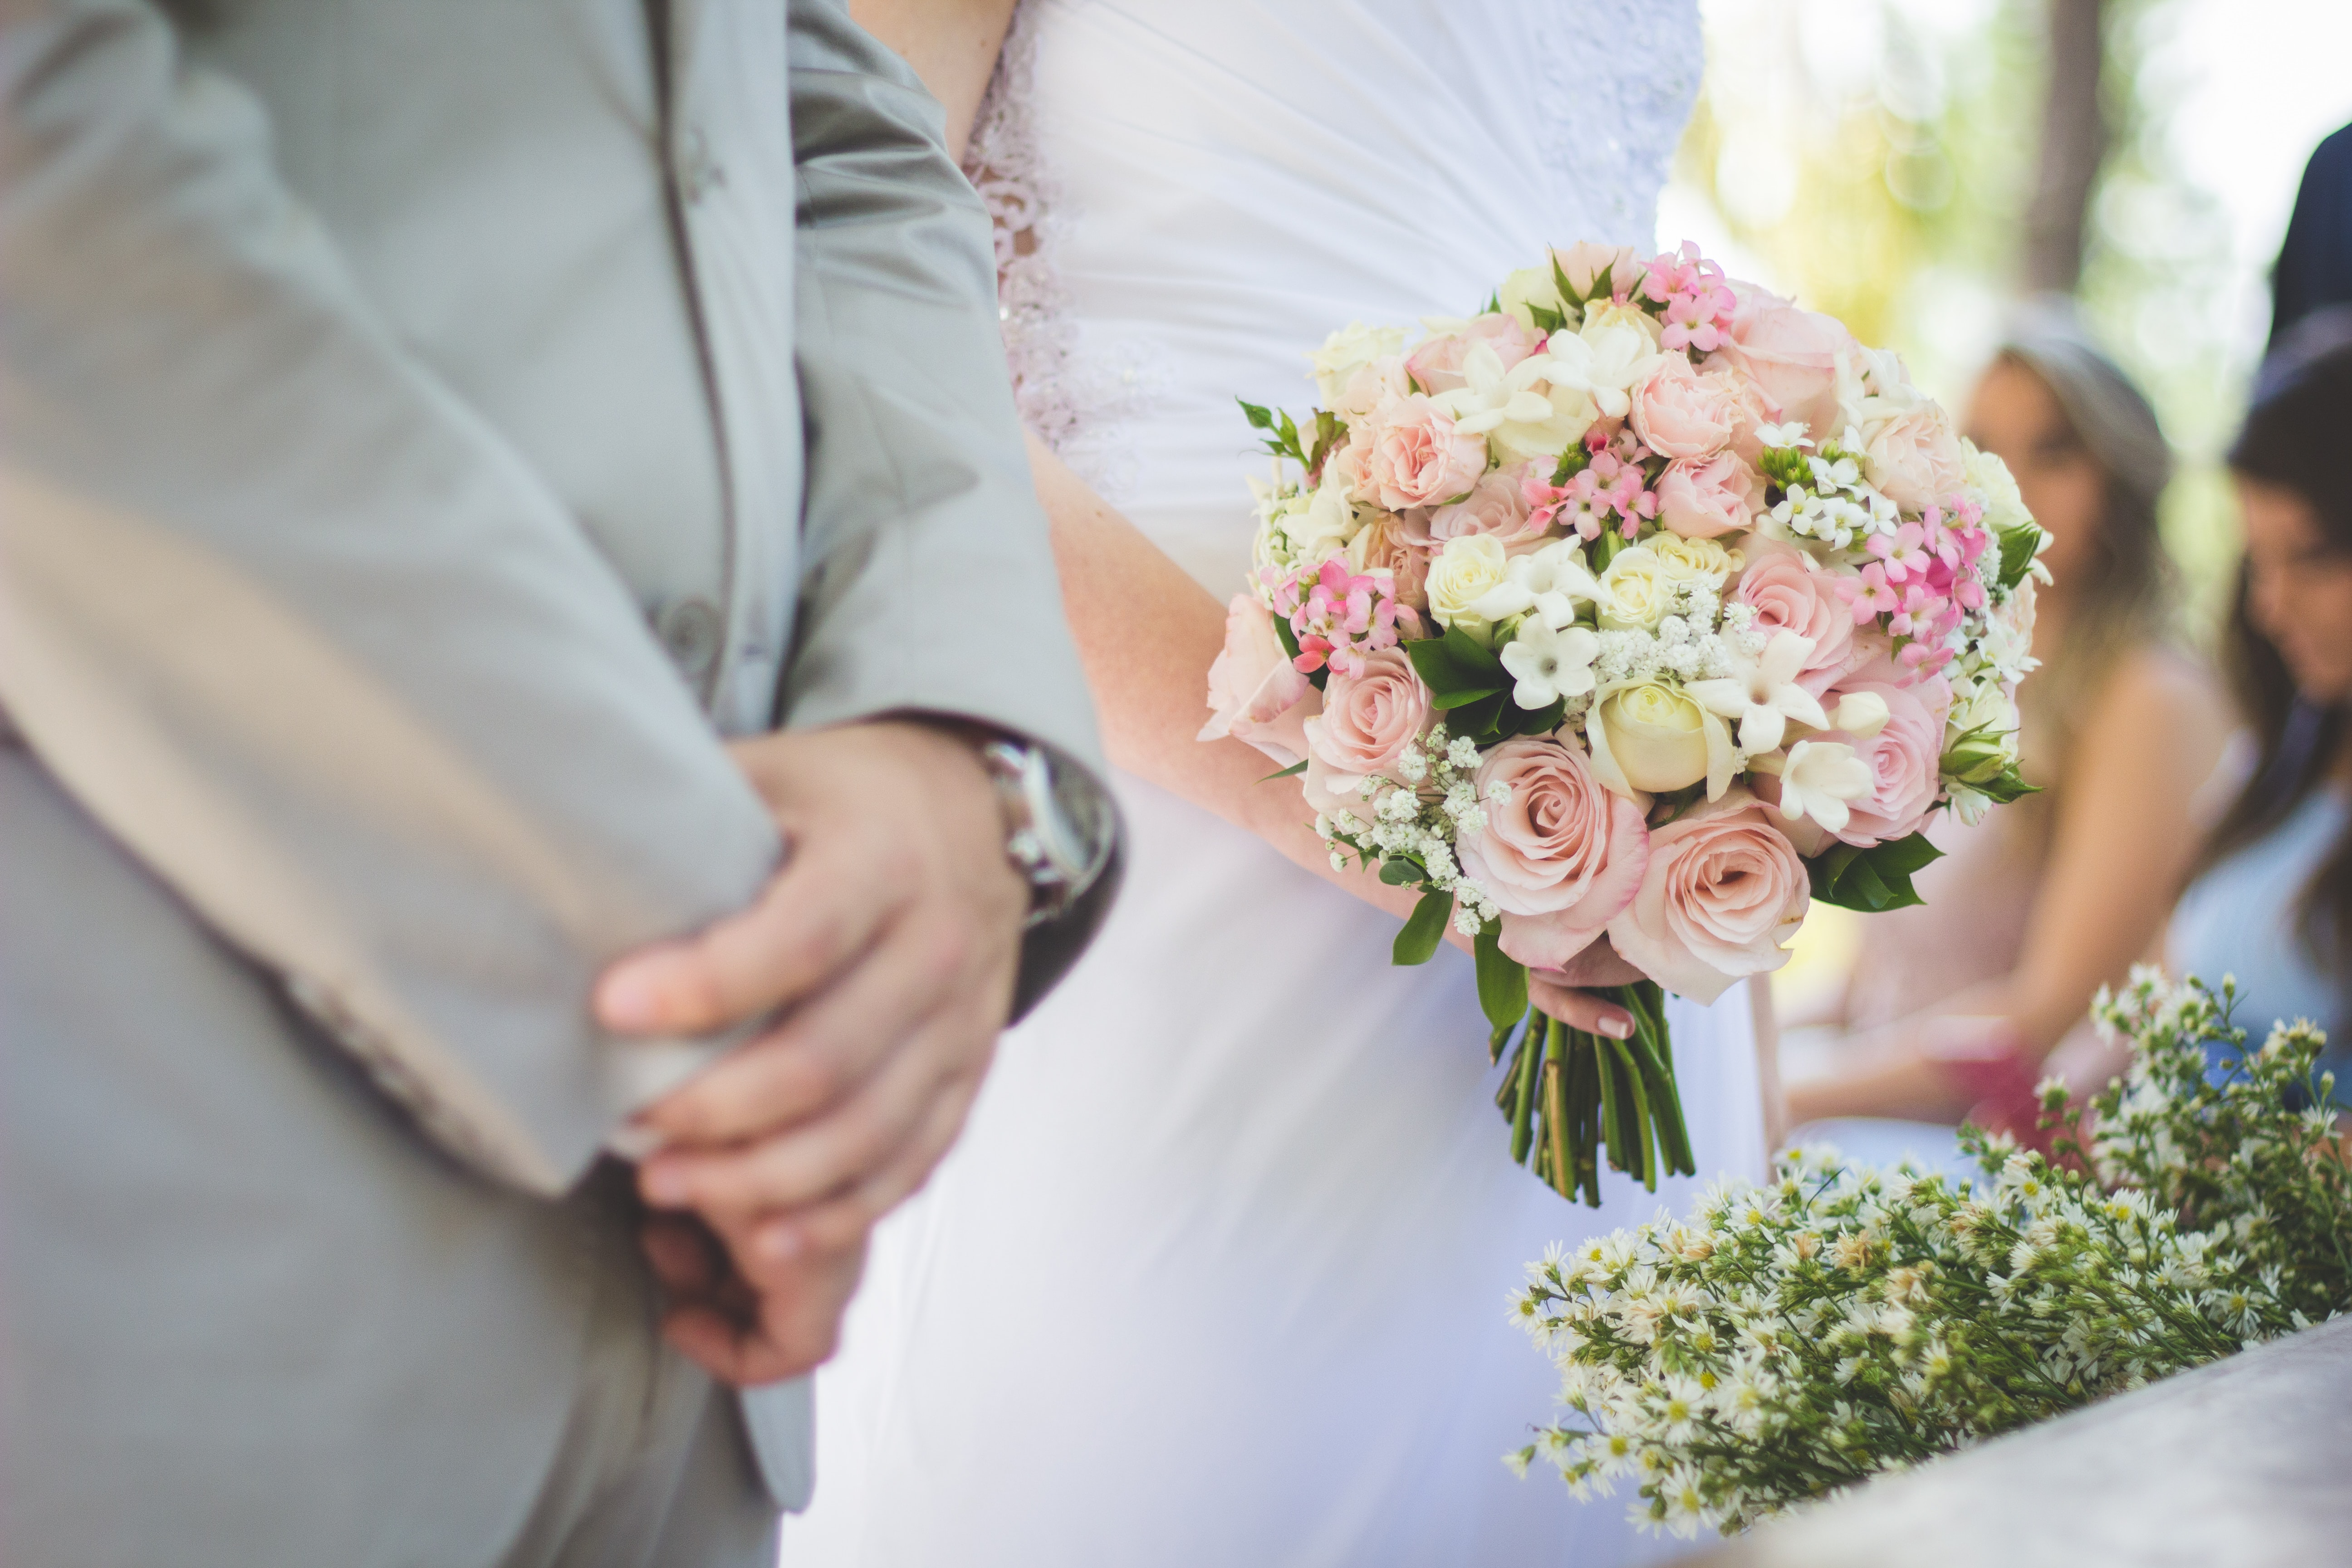 Äktenskapsförord är viktigt när en företagare gifter sig 